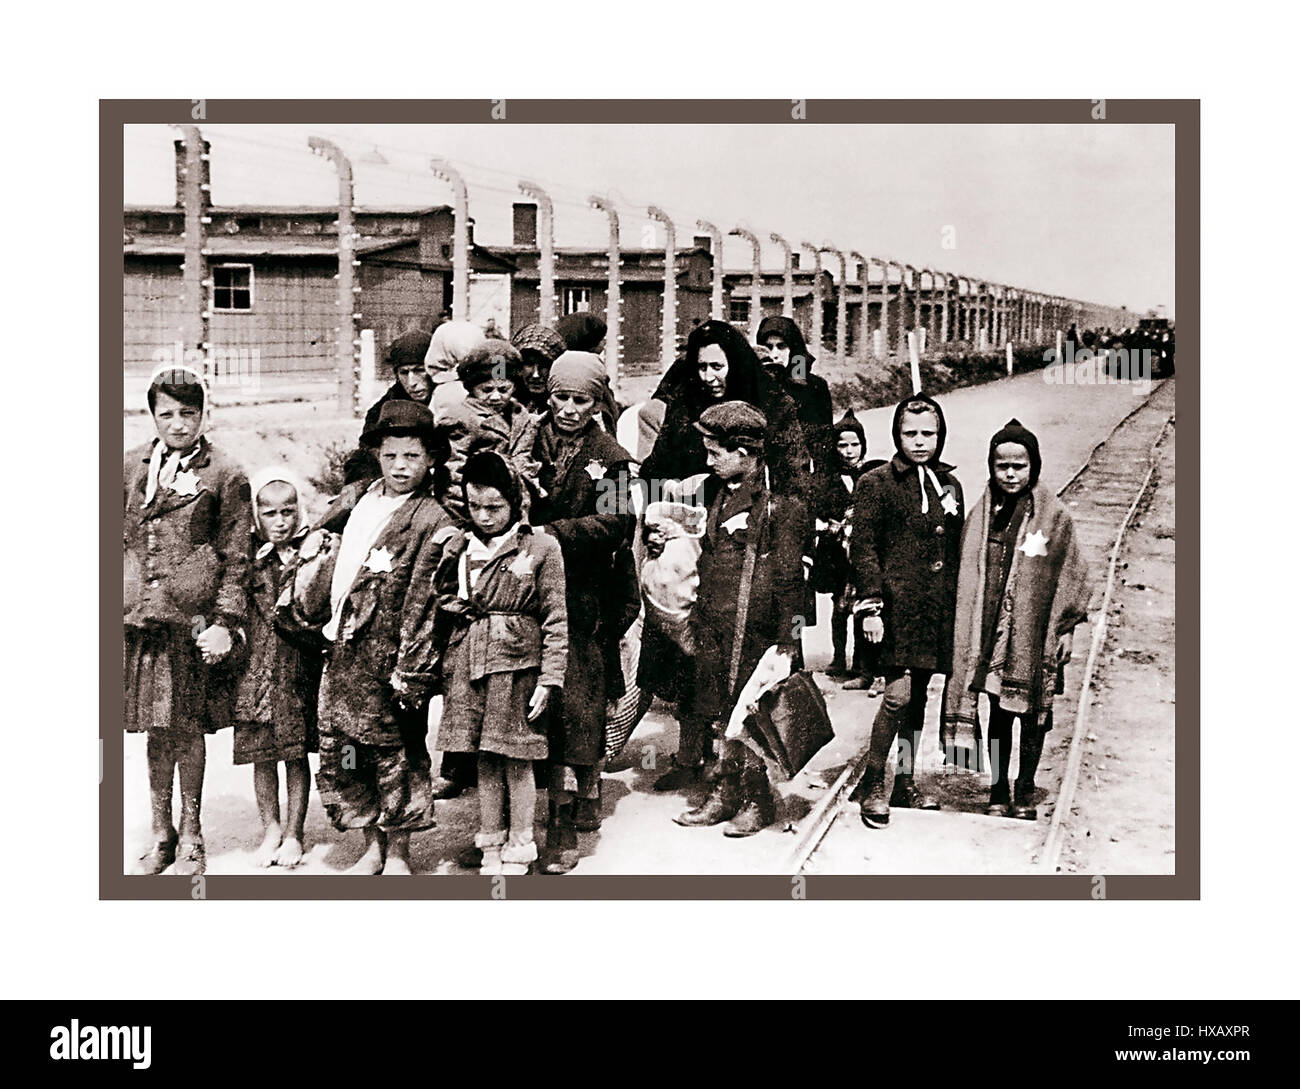 Auschwitz-Birkenau. Jüdische Kinder, die von den Nazis gekennzeichnete gelbe Sterne tragen, kommen in Auschwitz-Birkenau an. Ein deutsches Konzentrations- und Vernichtungslager aus dem Jahr WW2. Jüdische Kinder waren die größte Gruppe von denen, die ins Lager deportiert wurden. Sie wurden Anfang 1942 zusammen mit Erwachsenen dorthin geschickt, als Teil der „endgültigen Lösung der jüdischen Frage“— Die totale Zerstörung der jüdischen Bevölkerung Europas...das Konzentrationslager Auschwitz war ein Netz deutscher Nazi-Konzentrationslager und Vernichtungslager, die WW2 vom Dritten Reich in polnischen Gebieten errichtet und betrieben wurden, die von Nazi-Deutschland annektiert wurden Stockfoto